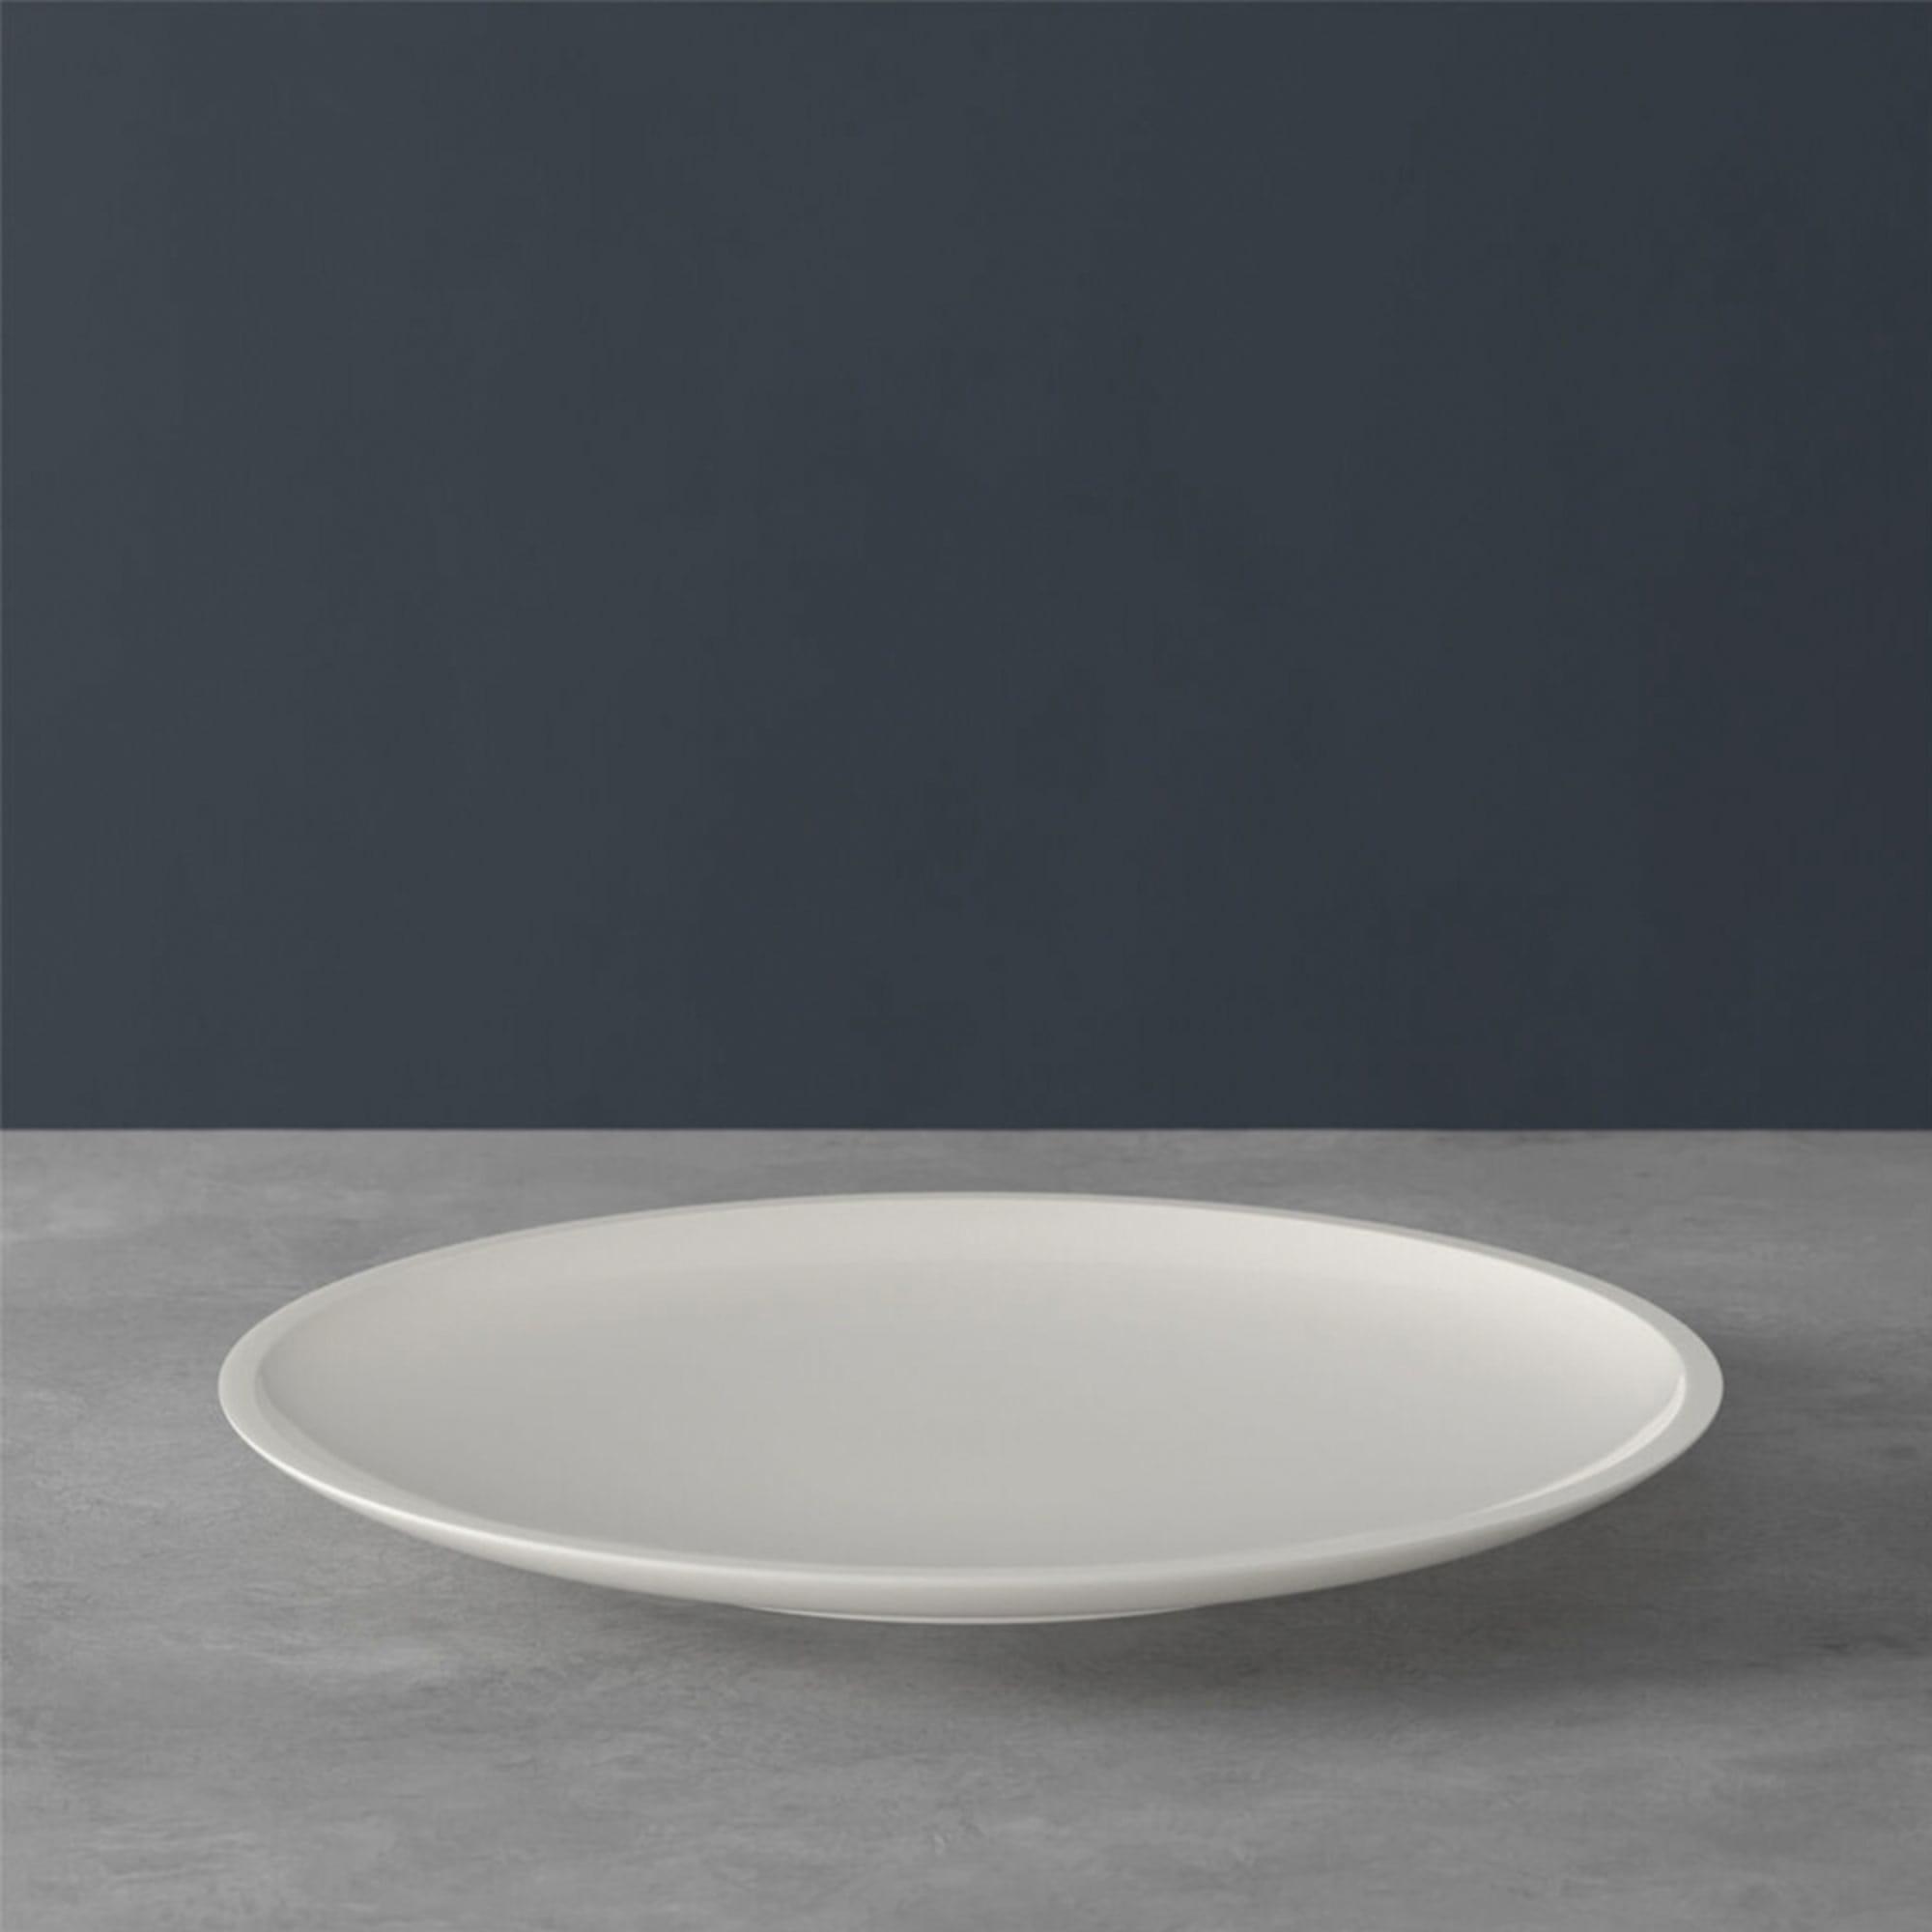 Villeroy & Boch Artesano Original Dinner Plate 27cm Image 6